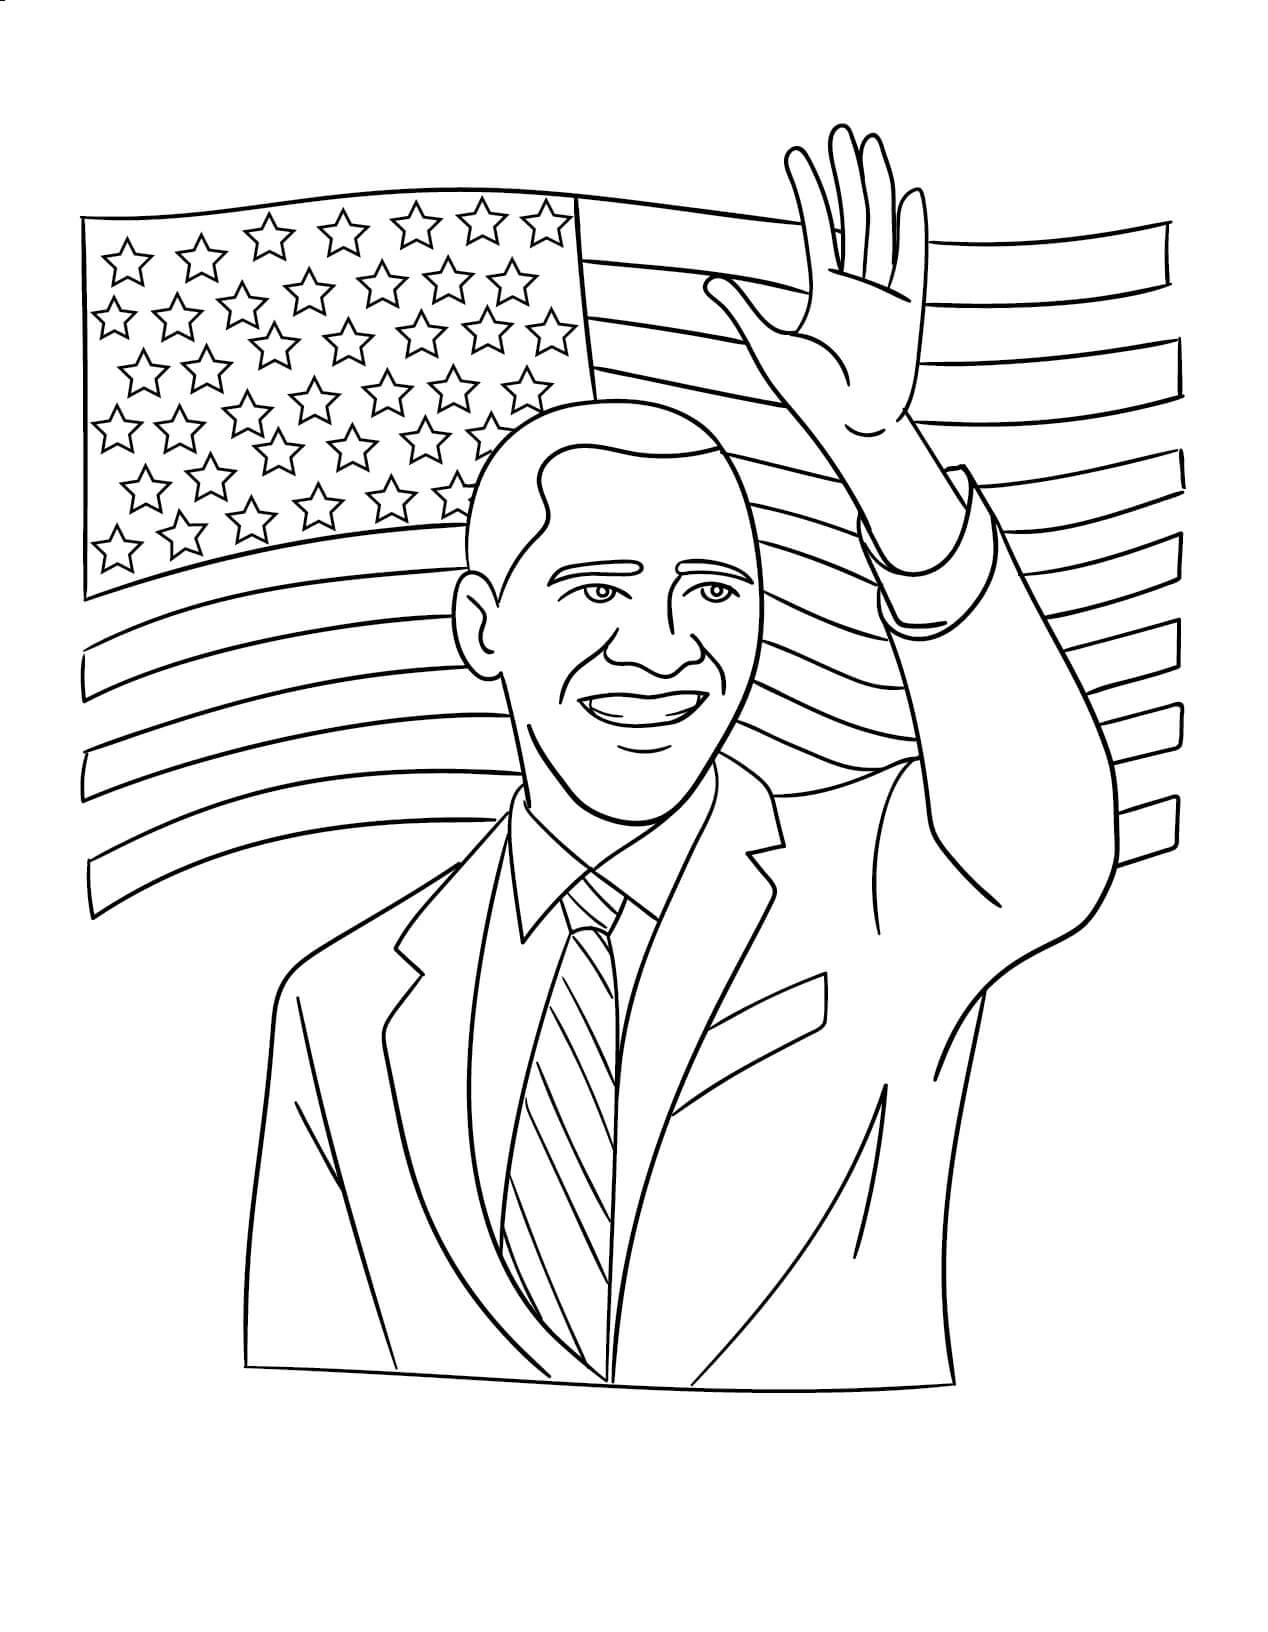 Obama zegt hallo met de vlag van Amerika